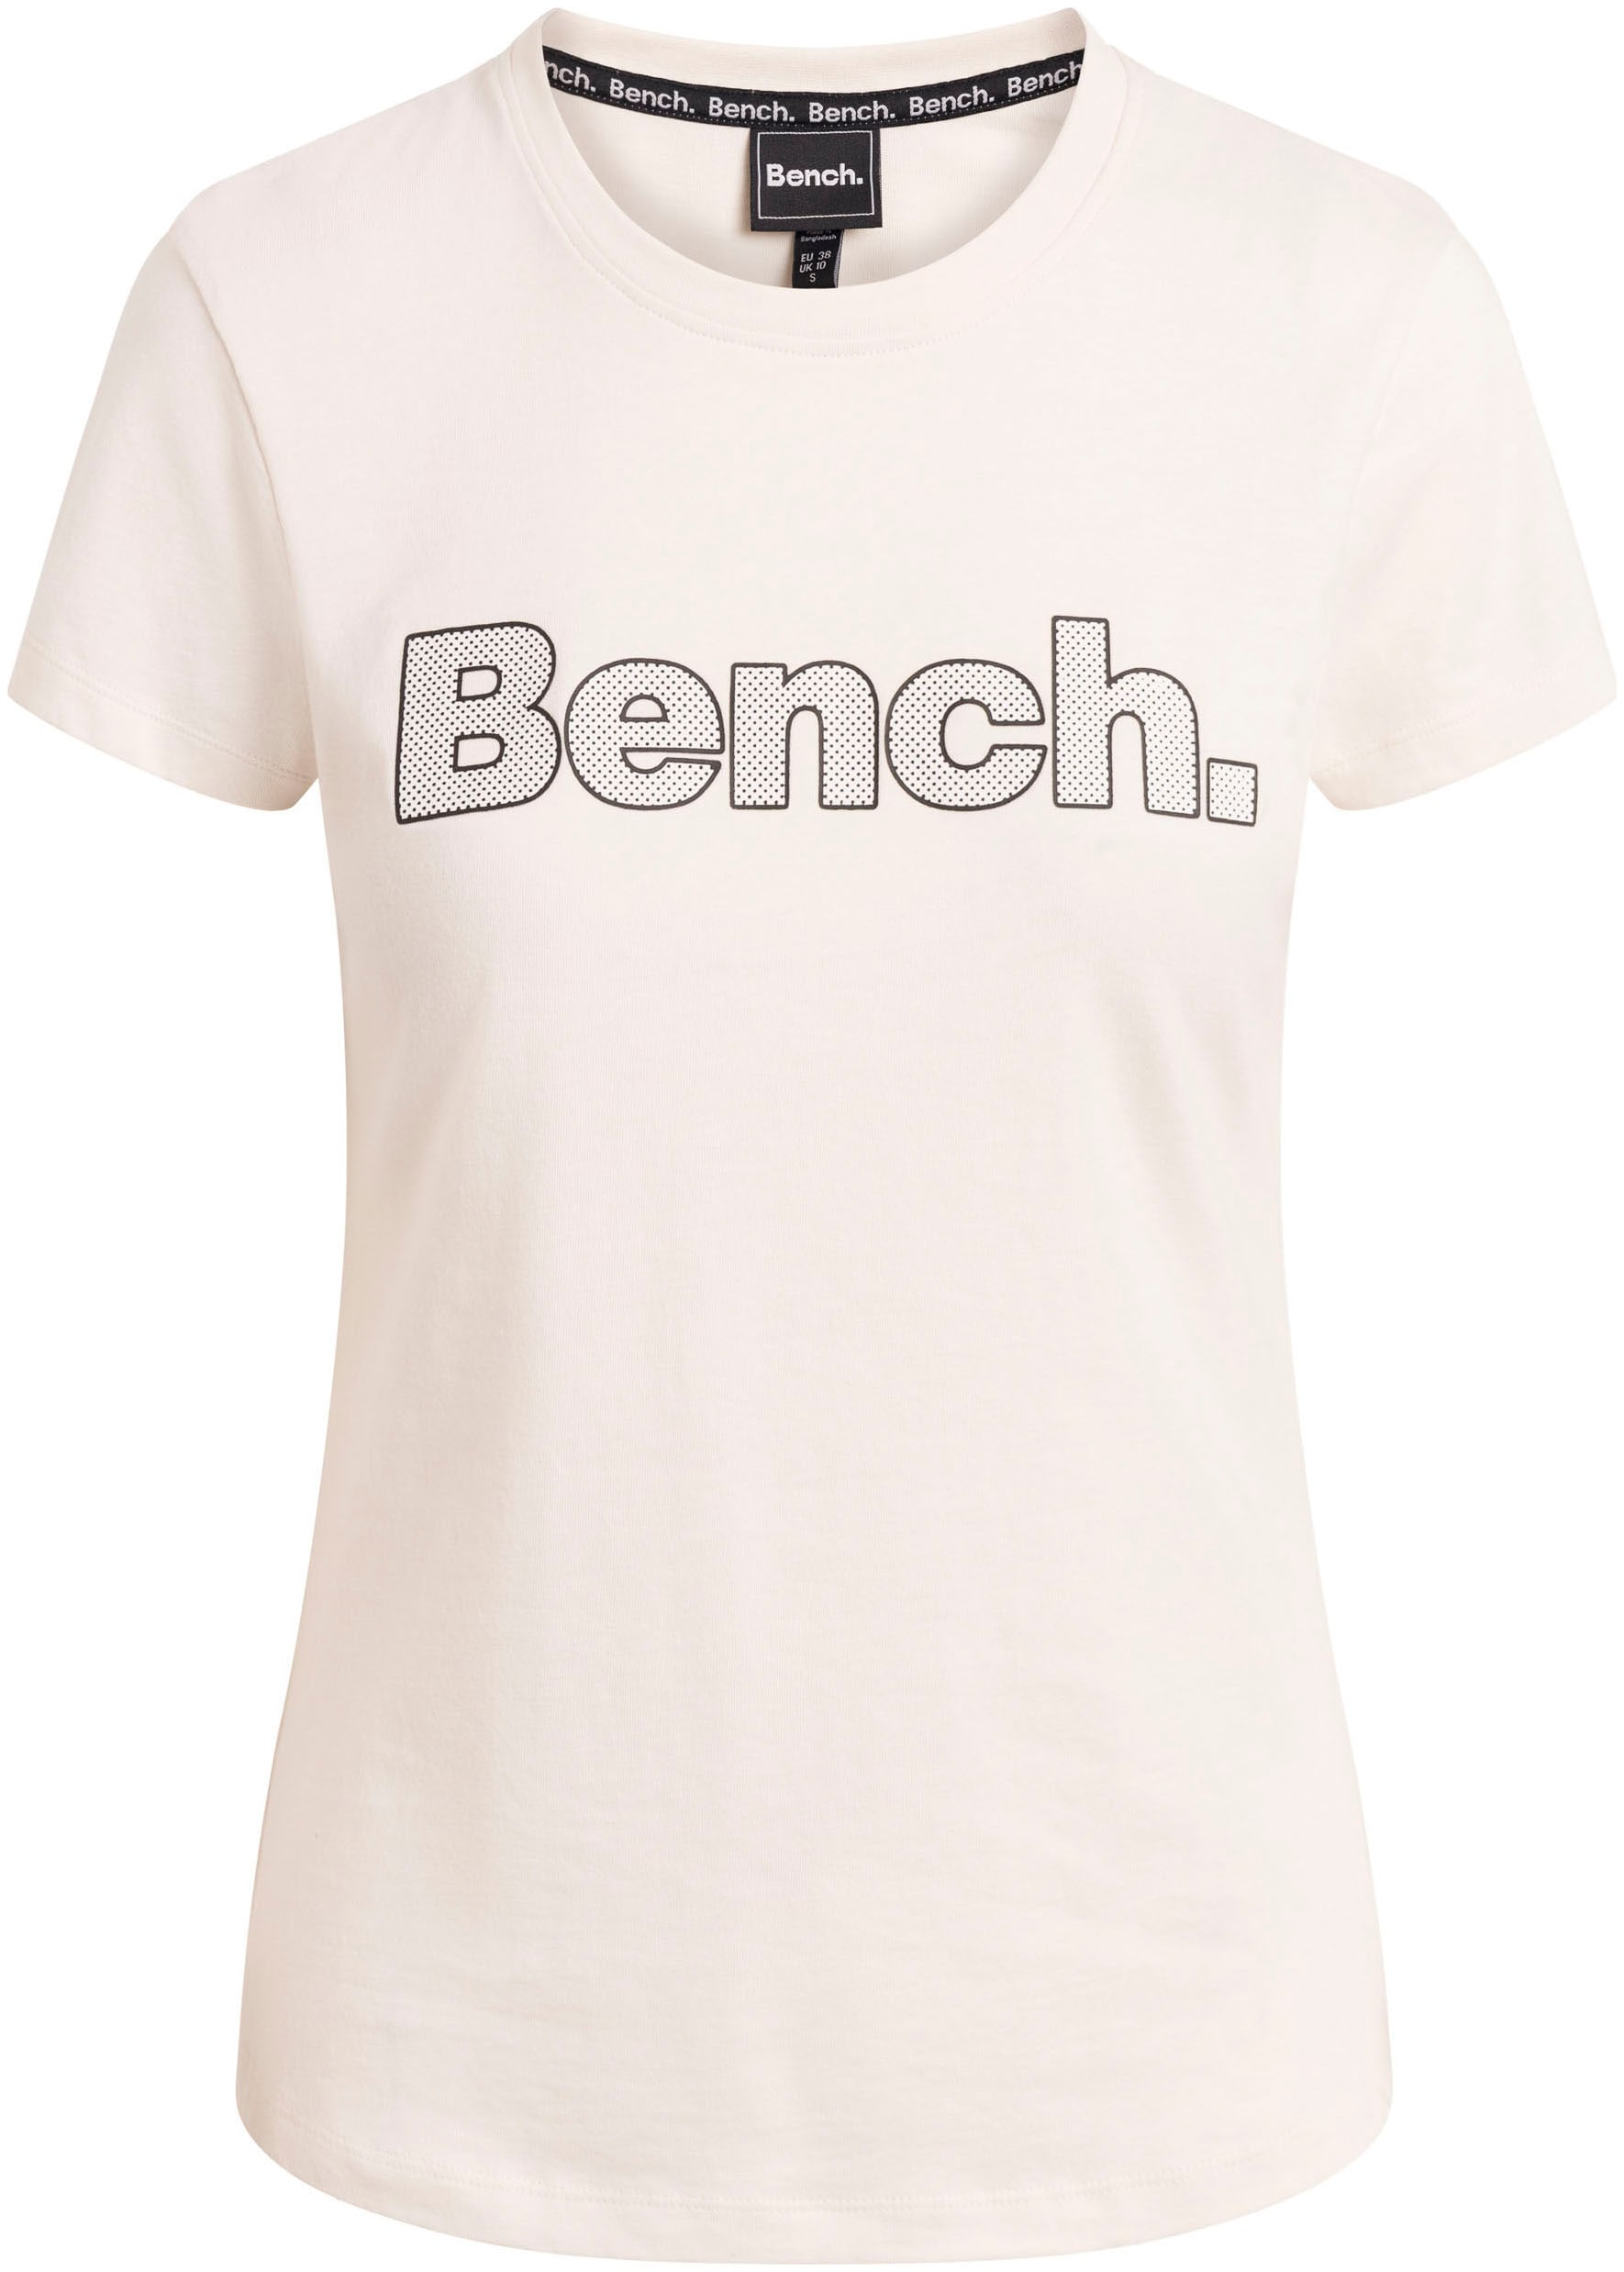 kaufen »LEORA« Bench. T-Shirt